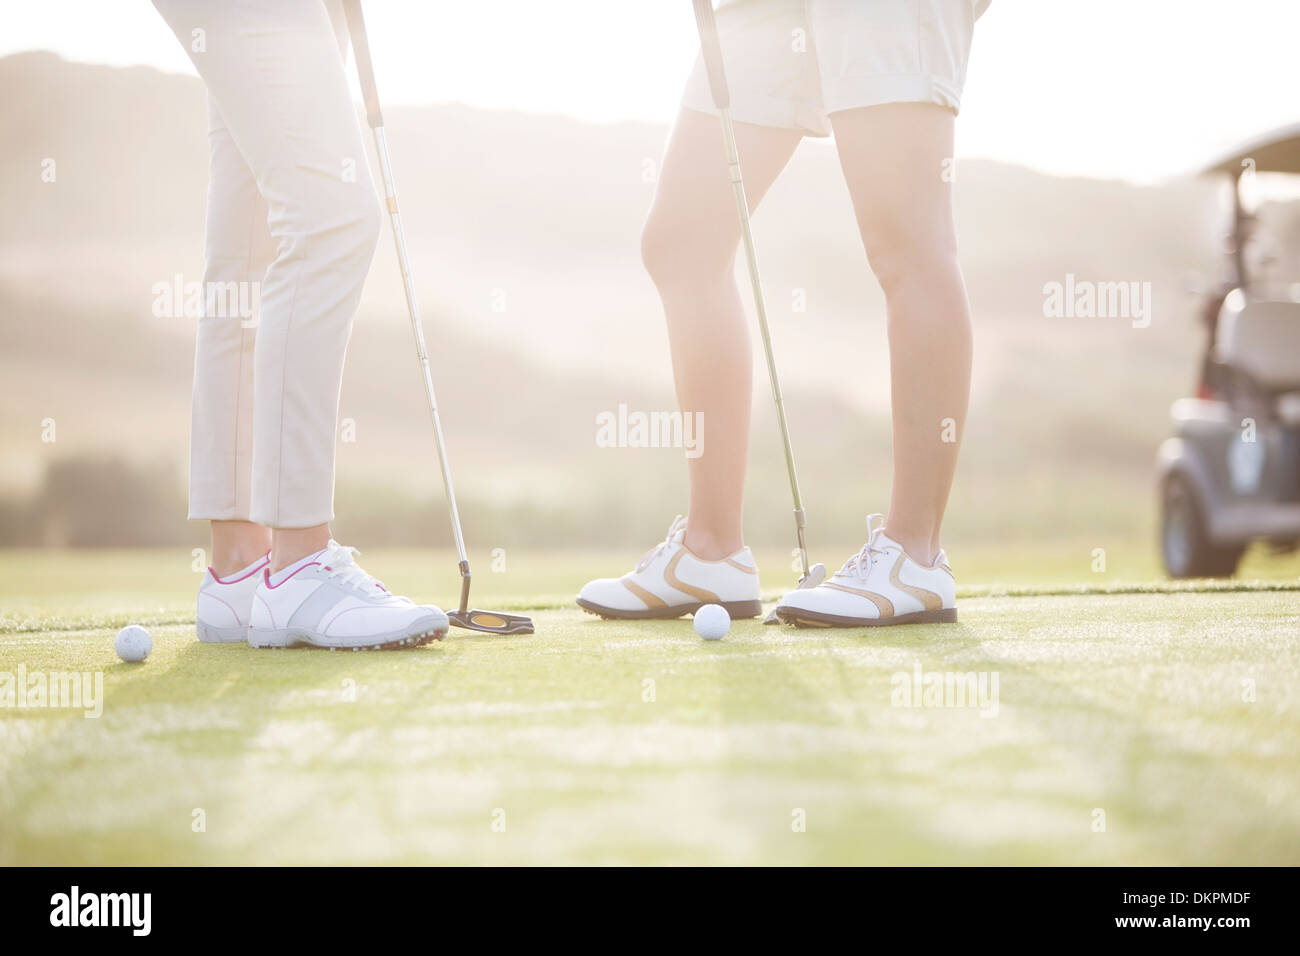 Le donne in piedi sul campo da golf Foto Stock